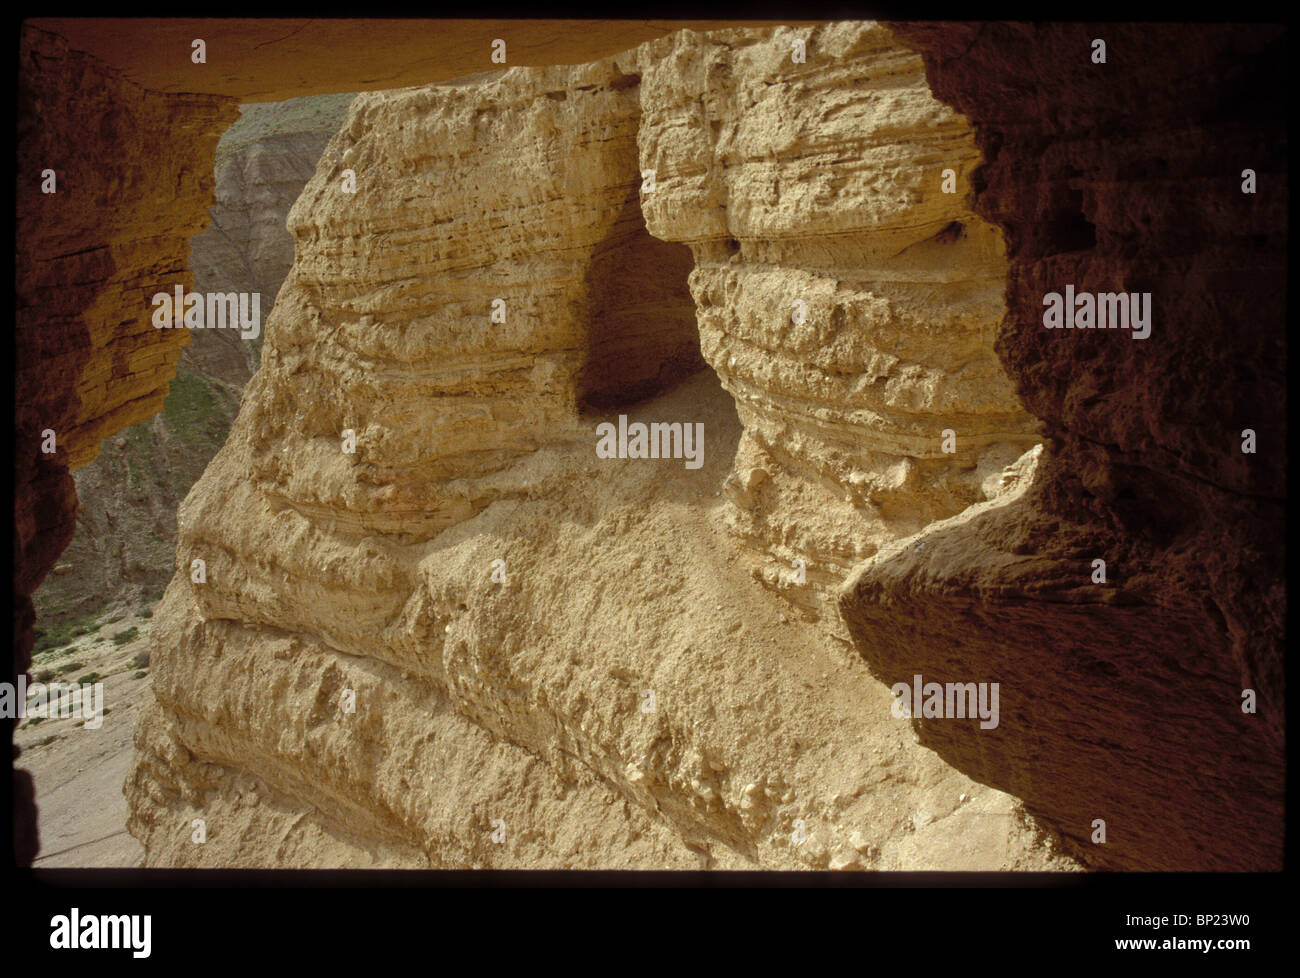 305. - Entrada a la cueva de Qumran N0. 10 Foto de stock